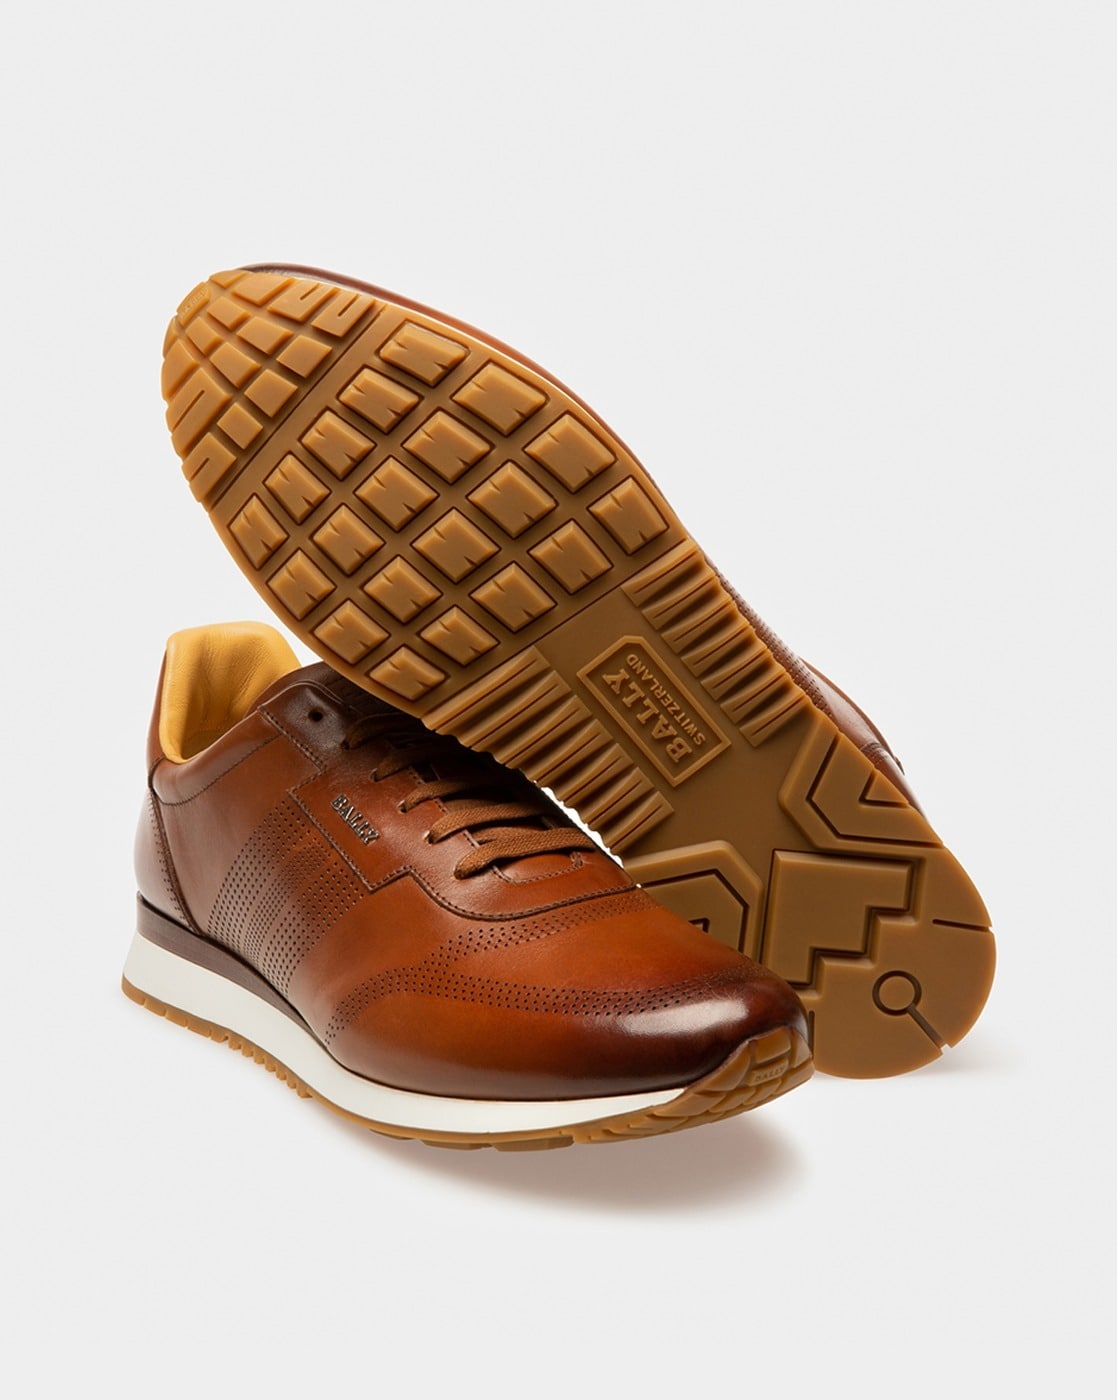 Bally Men's Myron Mix Cotton & Leather Sneakers – Maison dé Bouchard